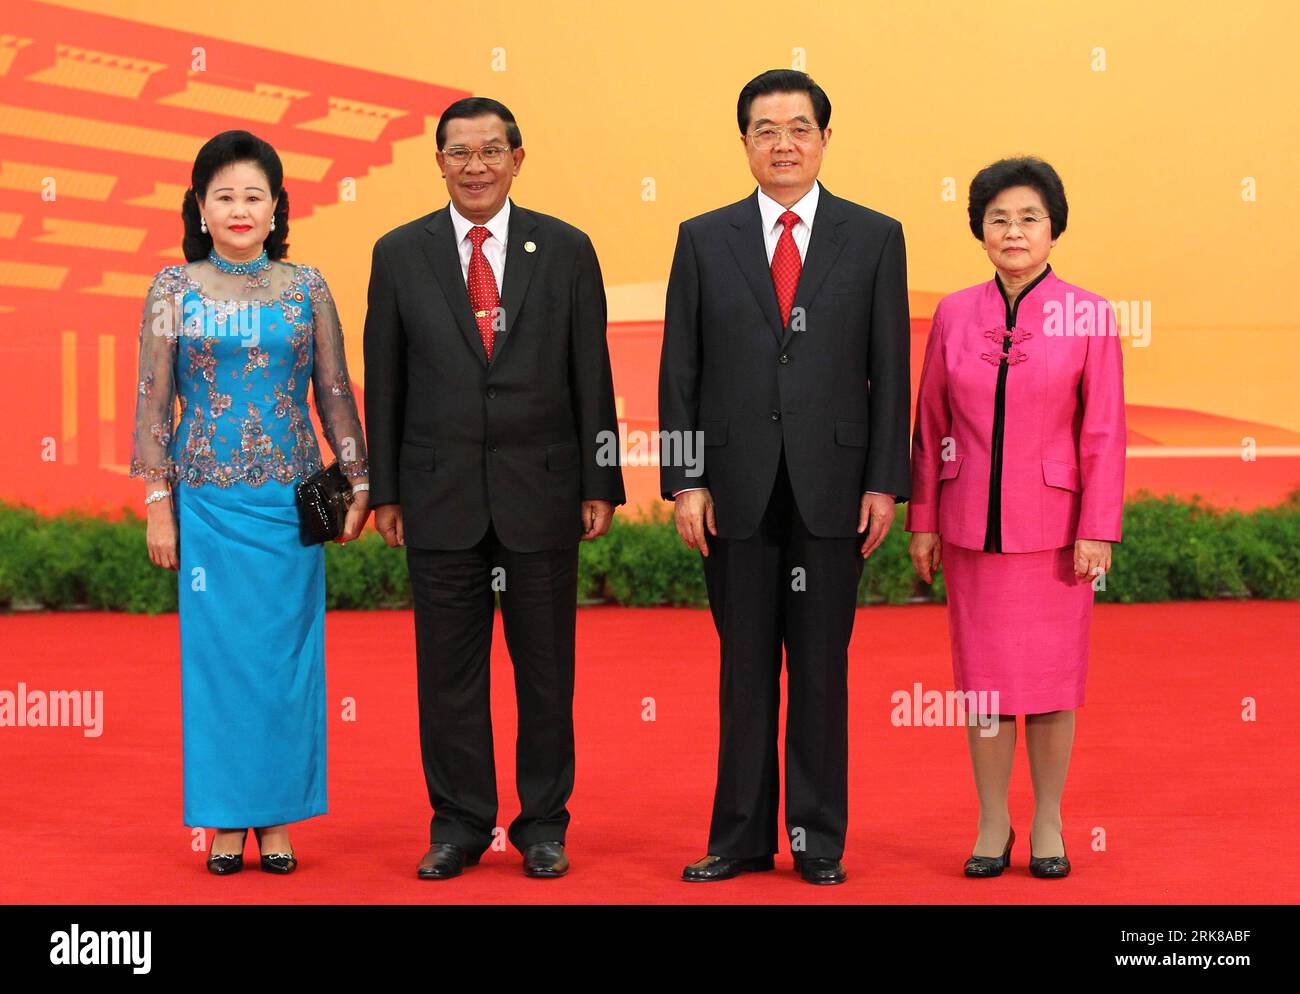 Bildnummer : 54002616 Datum : 30.04.2010 Copyright : imago/Xinhua (100430) -- SHANGHAI, 30 avril 2010 (Xinhua) -- le président chinois Hu Jintao (2e R) et son épouse Liu Yongqing (1e R) posent avec le Premier ministre cambodgien Hun Sen (2e L) et son épouse Bun Rany avant un dîner de bienvenue pour les invités d’honneur qui assisteront à la cérémonie d’ouverture de l’exposition universelle de Shanghai à Shanghai, dans l’est de la Chine, le 30 avril 2010. Le président Hu Jintao a organisé vendredi le dîner de bienvenue pour les invités d'honneur à Shanghai. (Xinhua/Xie Huanchi) (lyx) WORLD EXPO-PRÉSIDENT CHINOIS-DÎNER DE BIENVENUE-INVITÉS (CN) PUBLICATI Banque D'Images